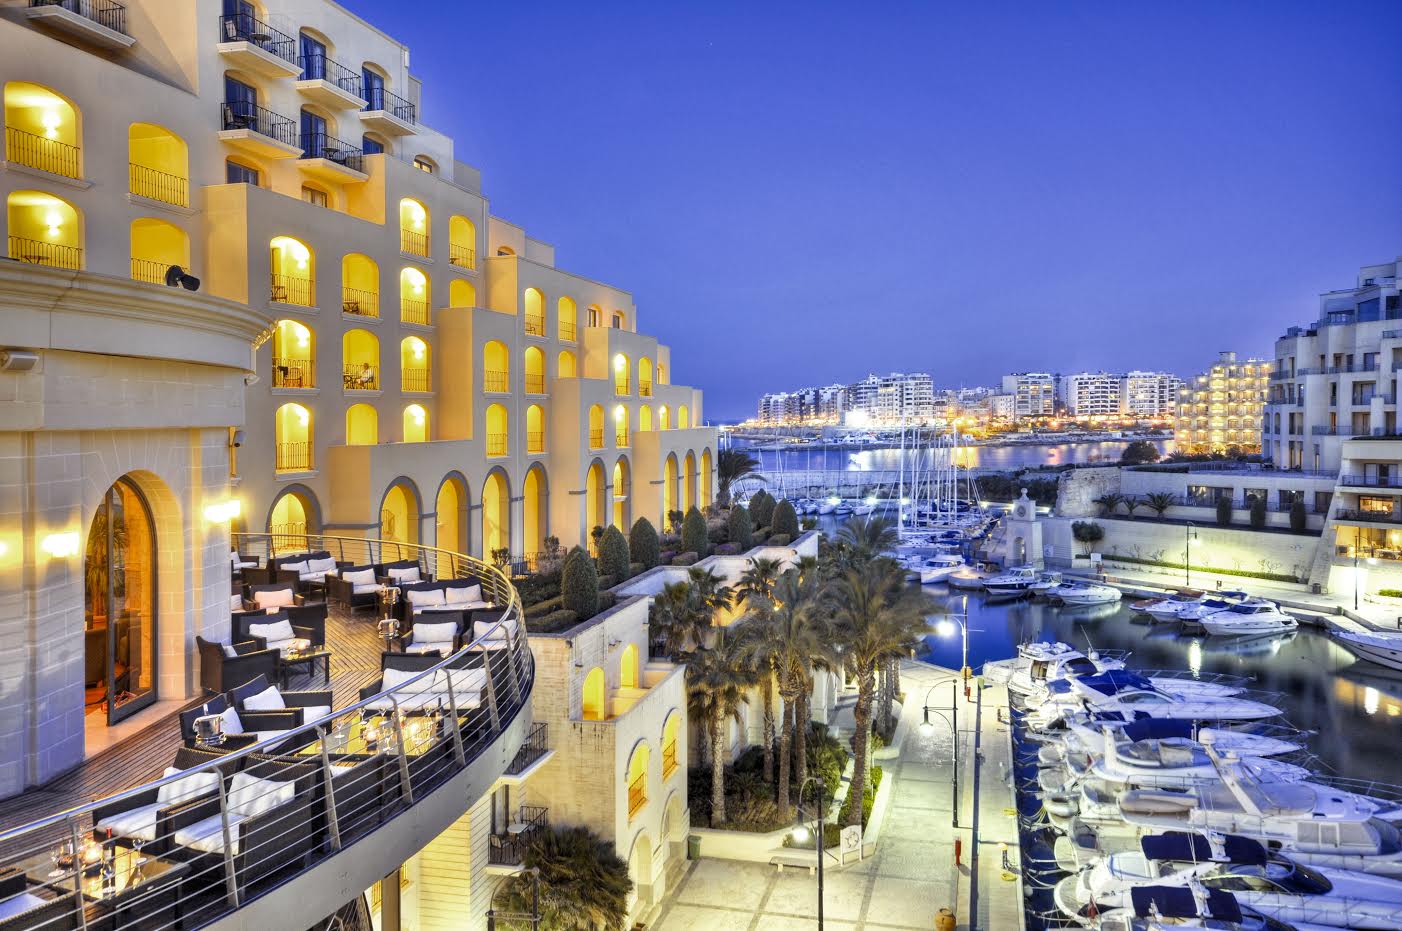 PokerStars Picks Malta to Host 2015 EPT Event, GPI Awards